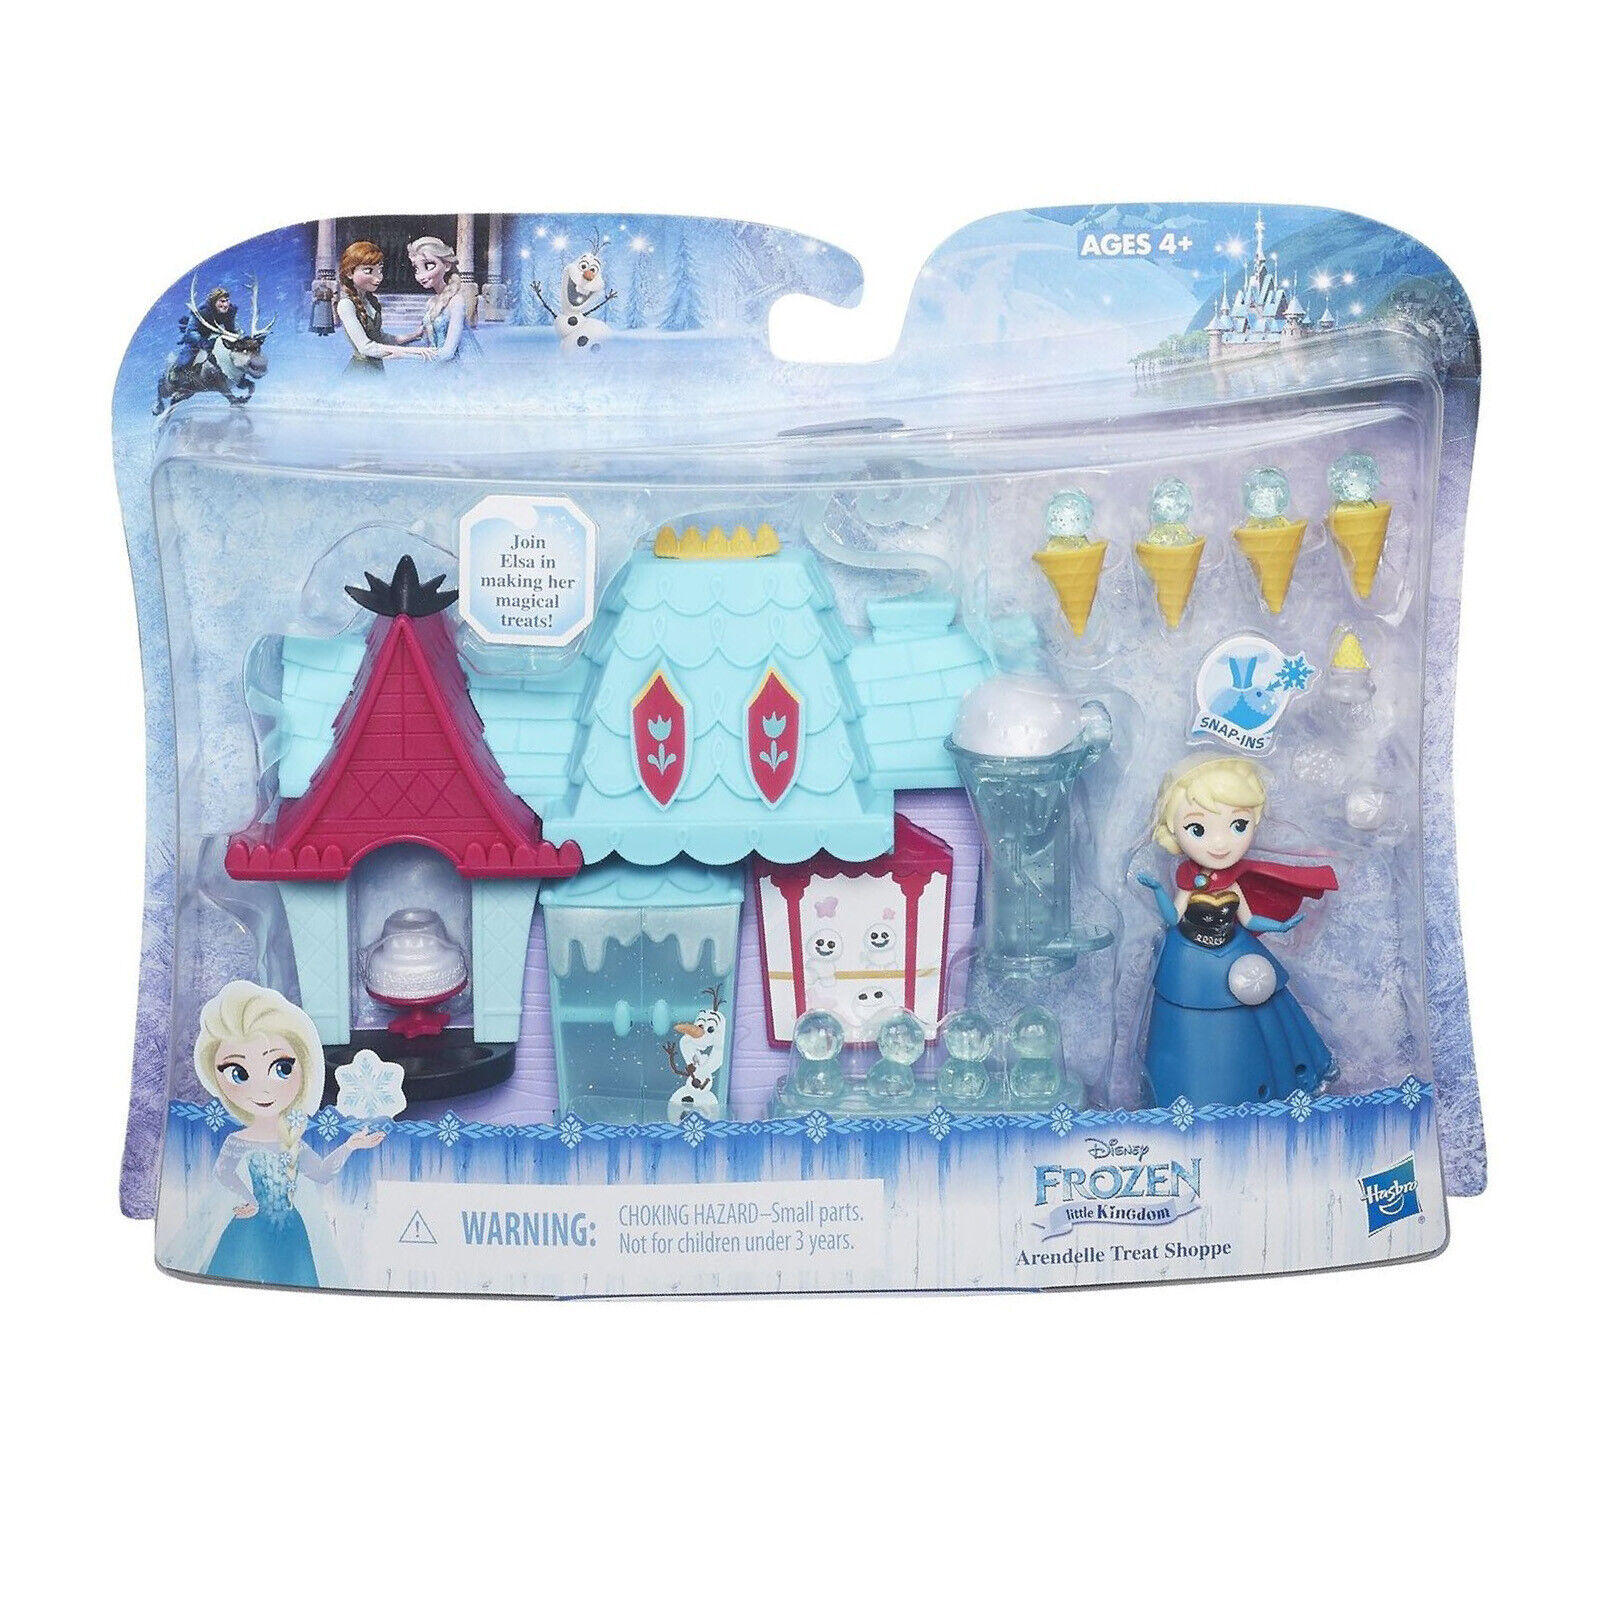 Disney Princess Elsa Frozen Little Kingdom Arendelle Treat Shoppe Toy Figure Set